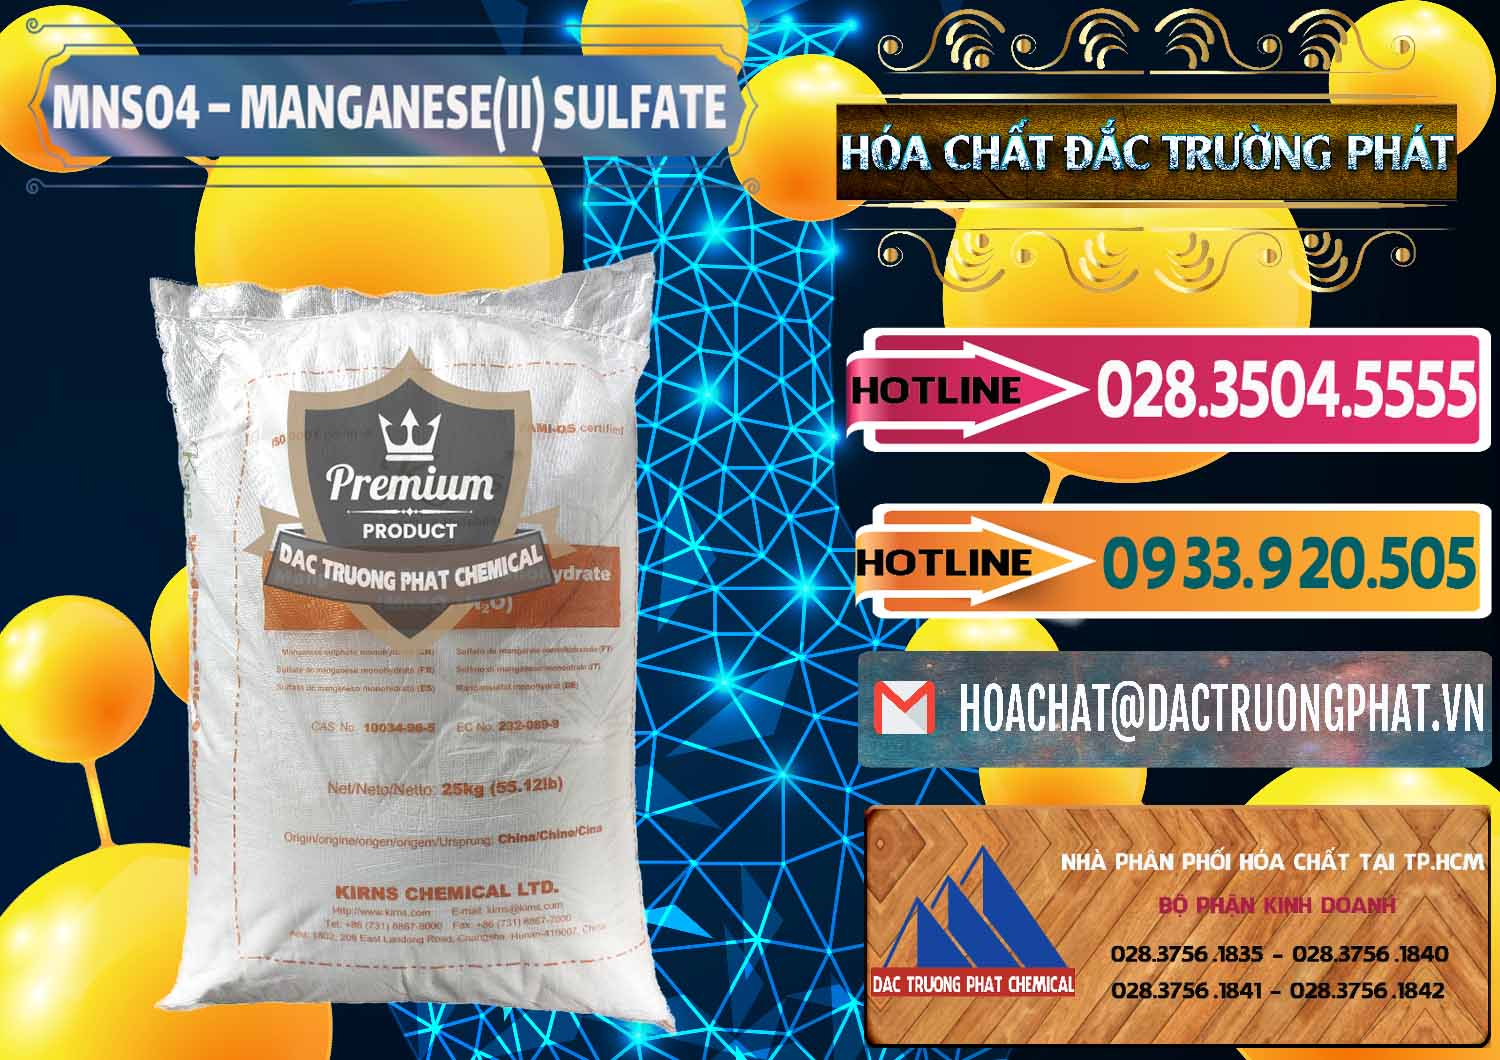 Cty bán và cung ứng MNSO4 – Manganese (II) Sulfate Kirns Trung Quốc China - 0095 - Nhà phân phối & cung ứng hóa chất tại TP.HCM - dactruongphat.vn